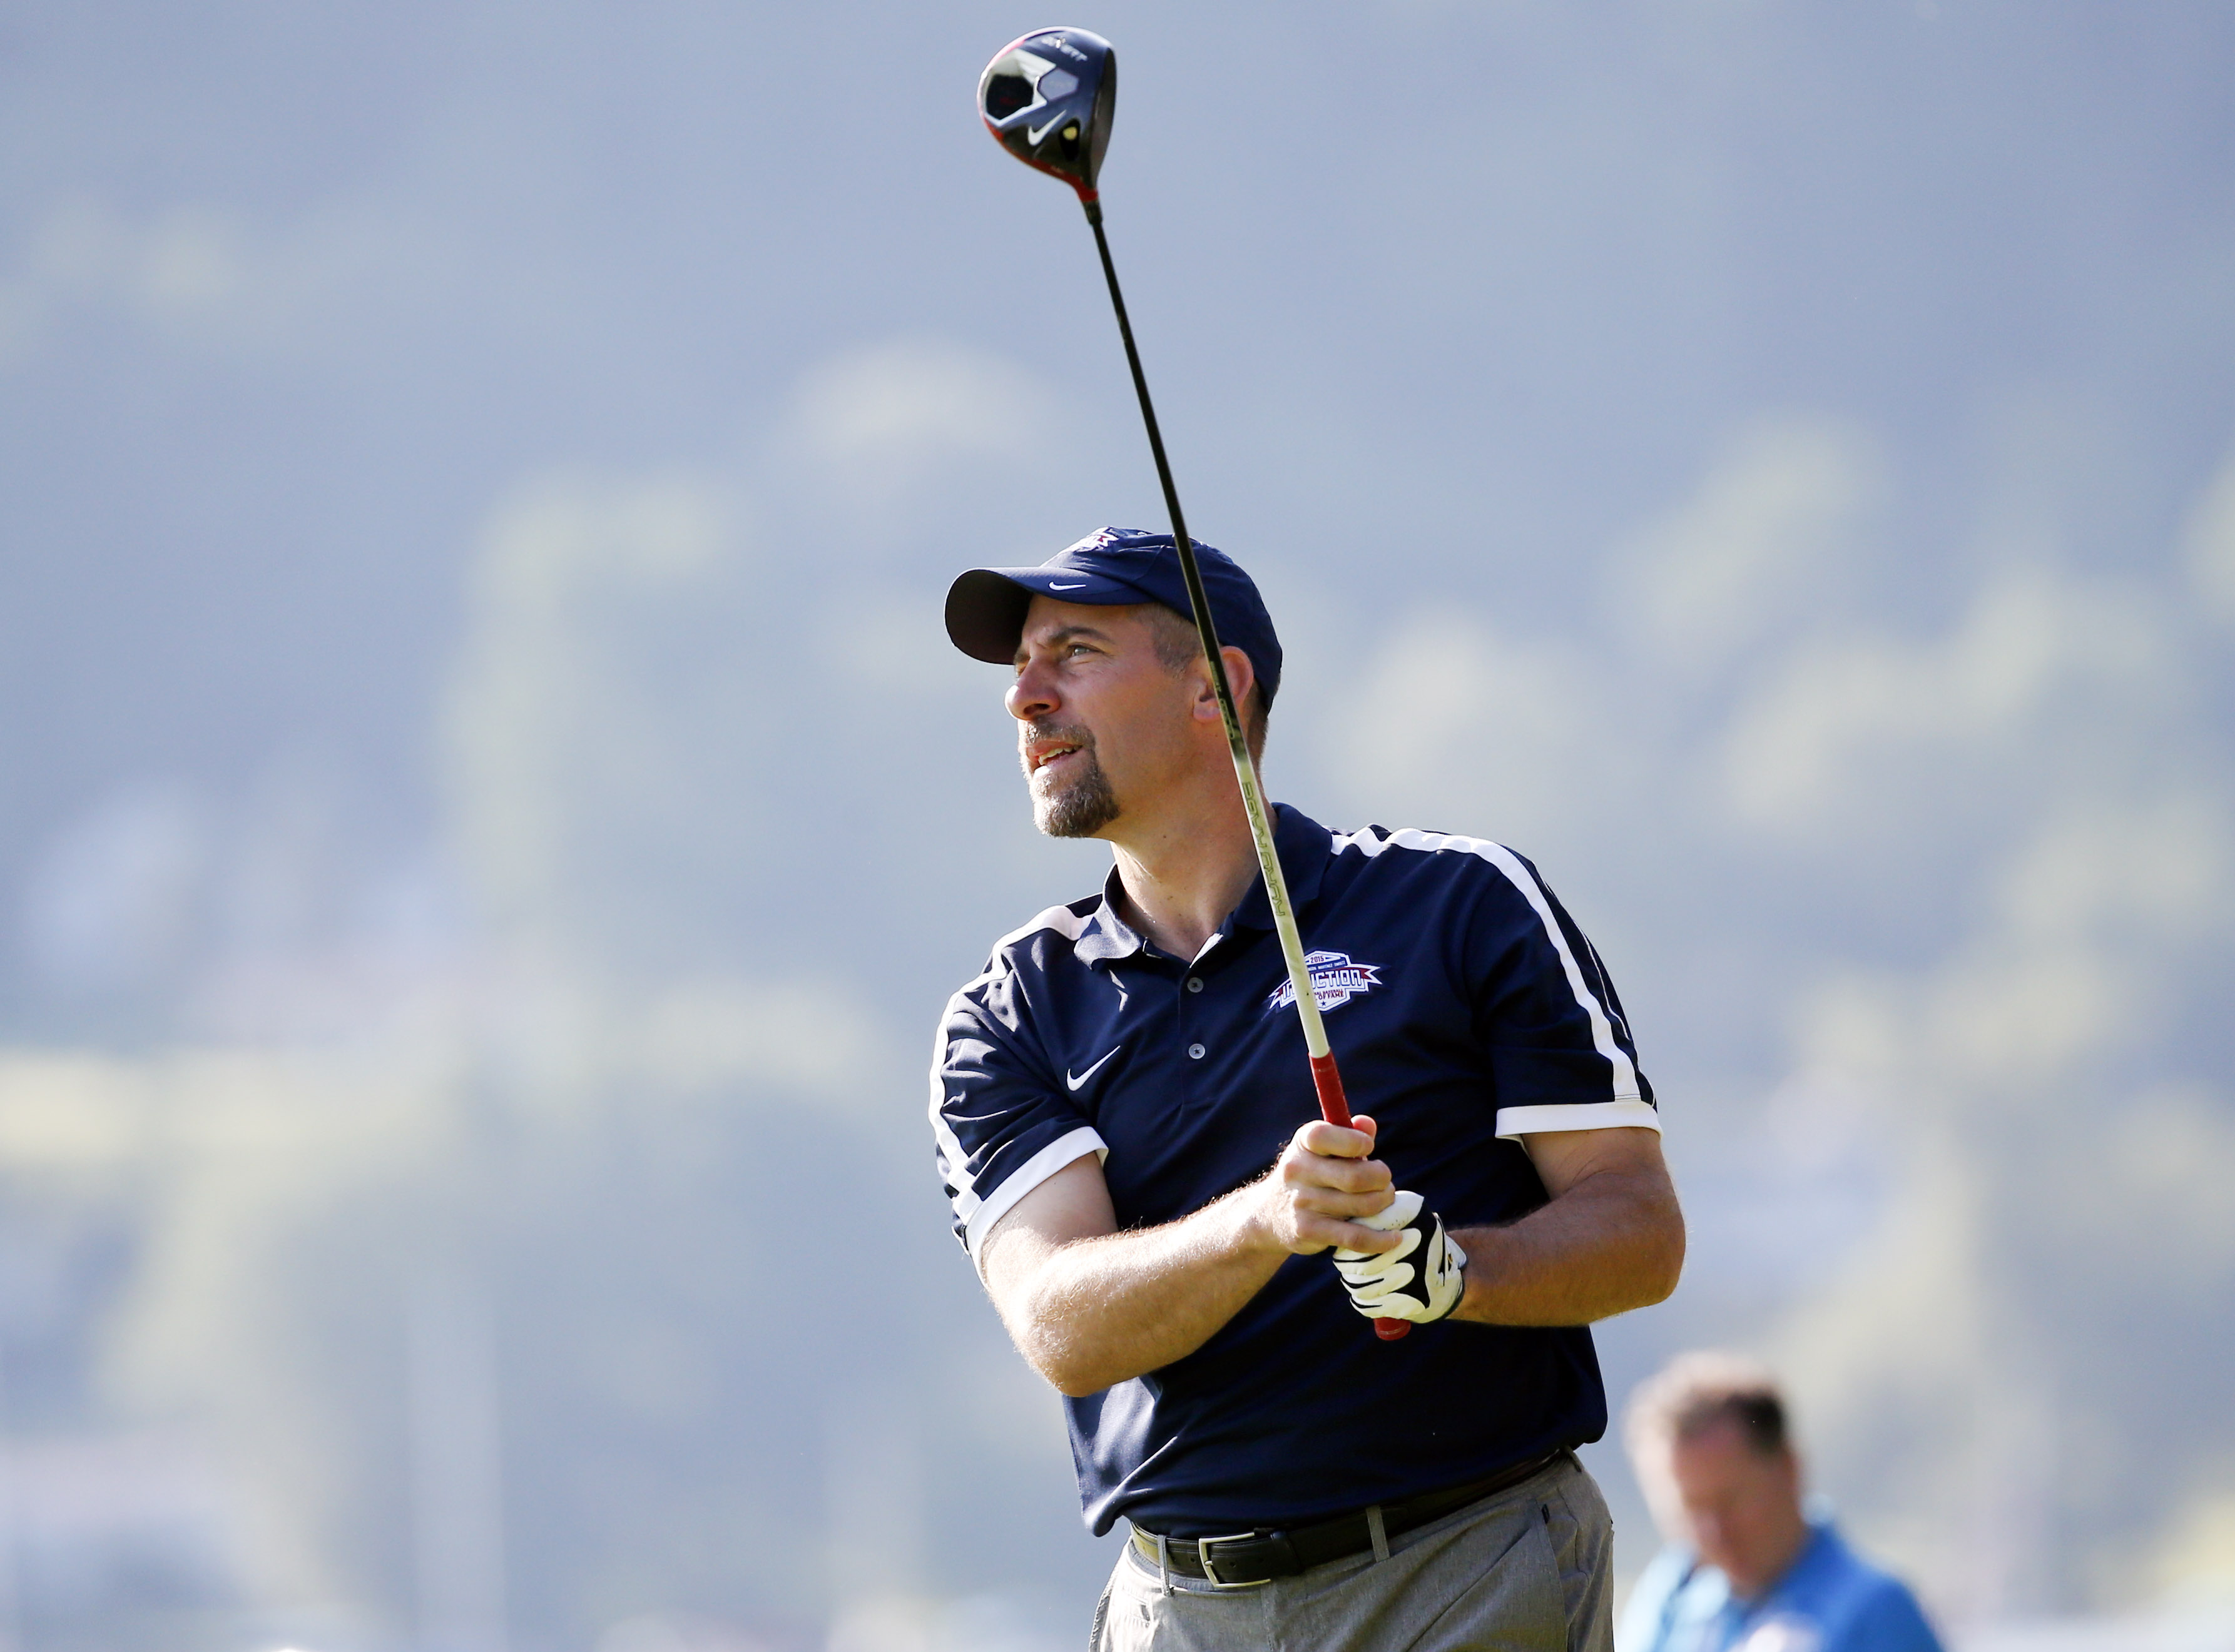 John Smoltz takes his golf game to mountaintop at U.S. Senior Open